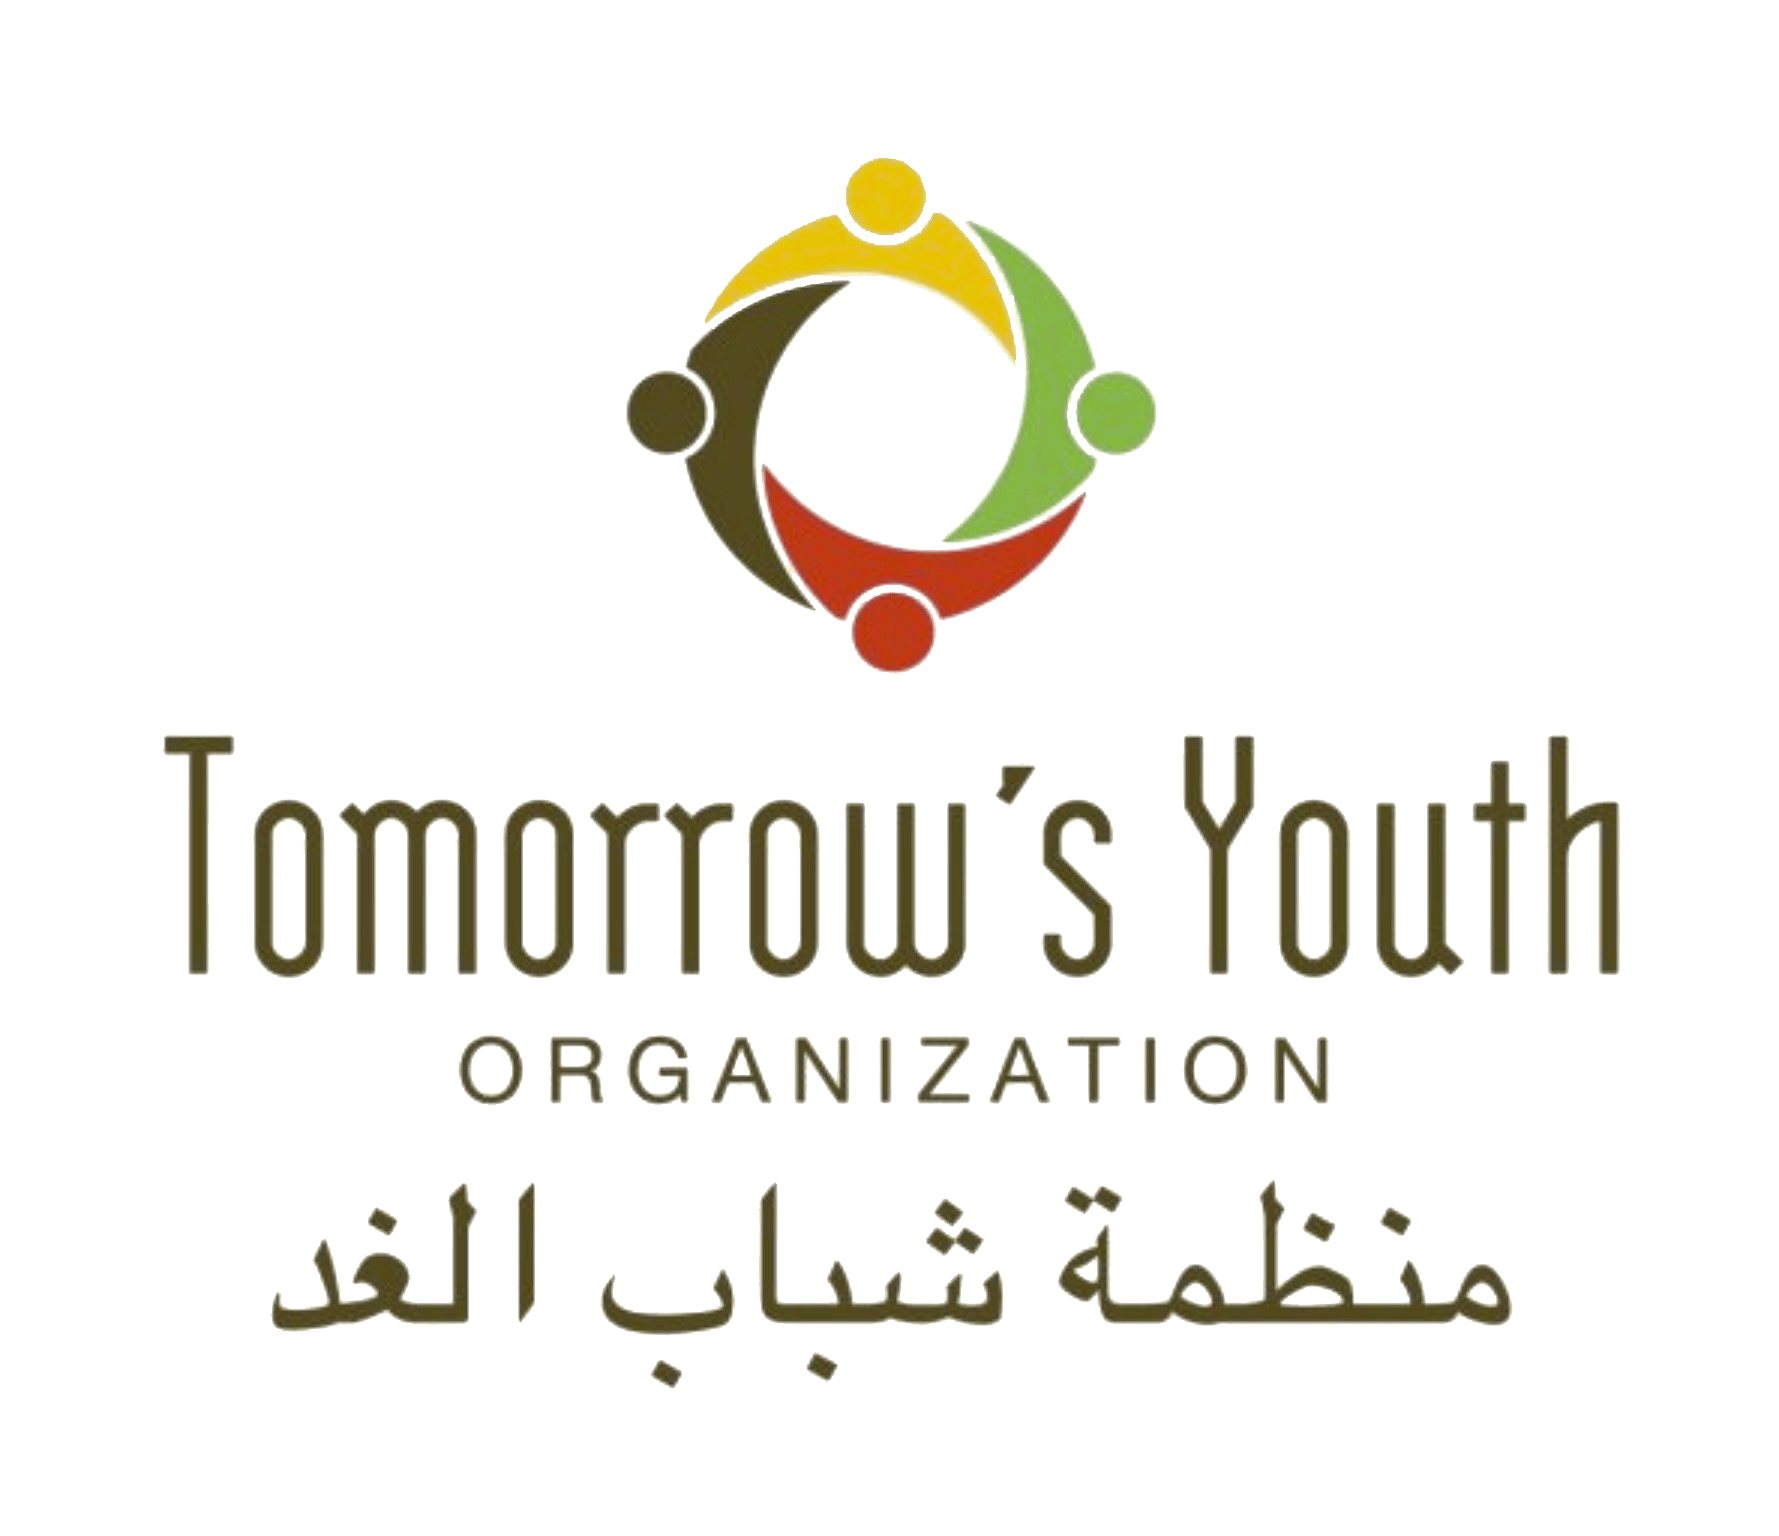 Tomorrow Youth Organization